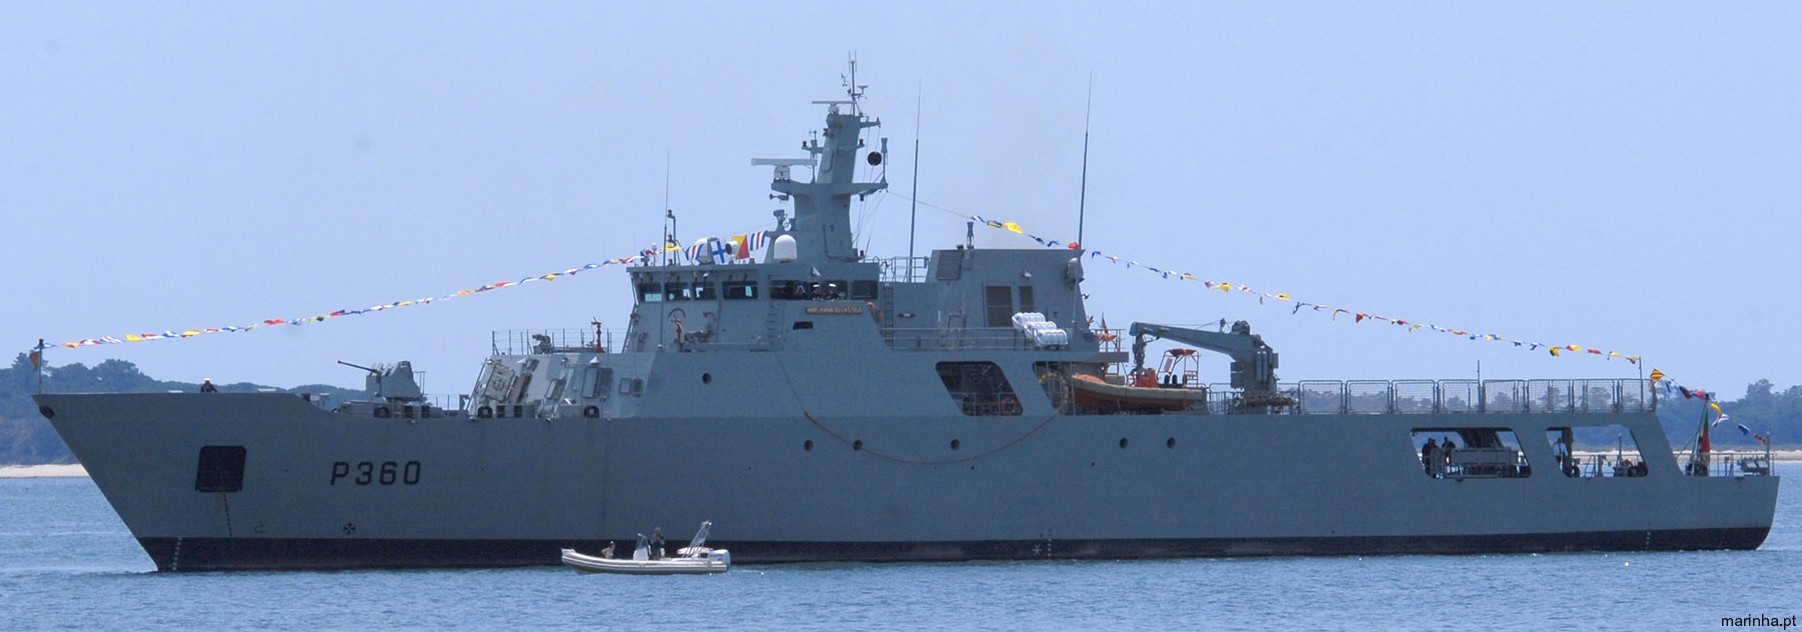 p-360 nrp viana do castelo class offshore patrol vessel opv portuguese navy marinha npo2000 05